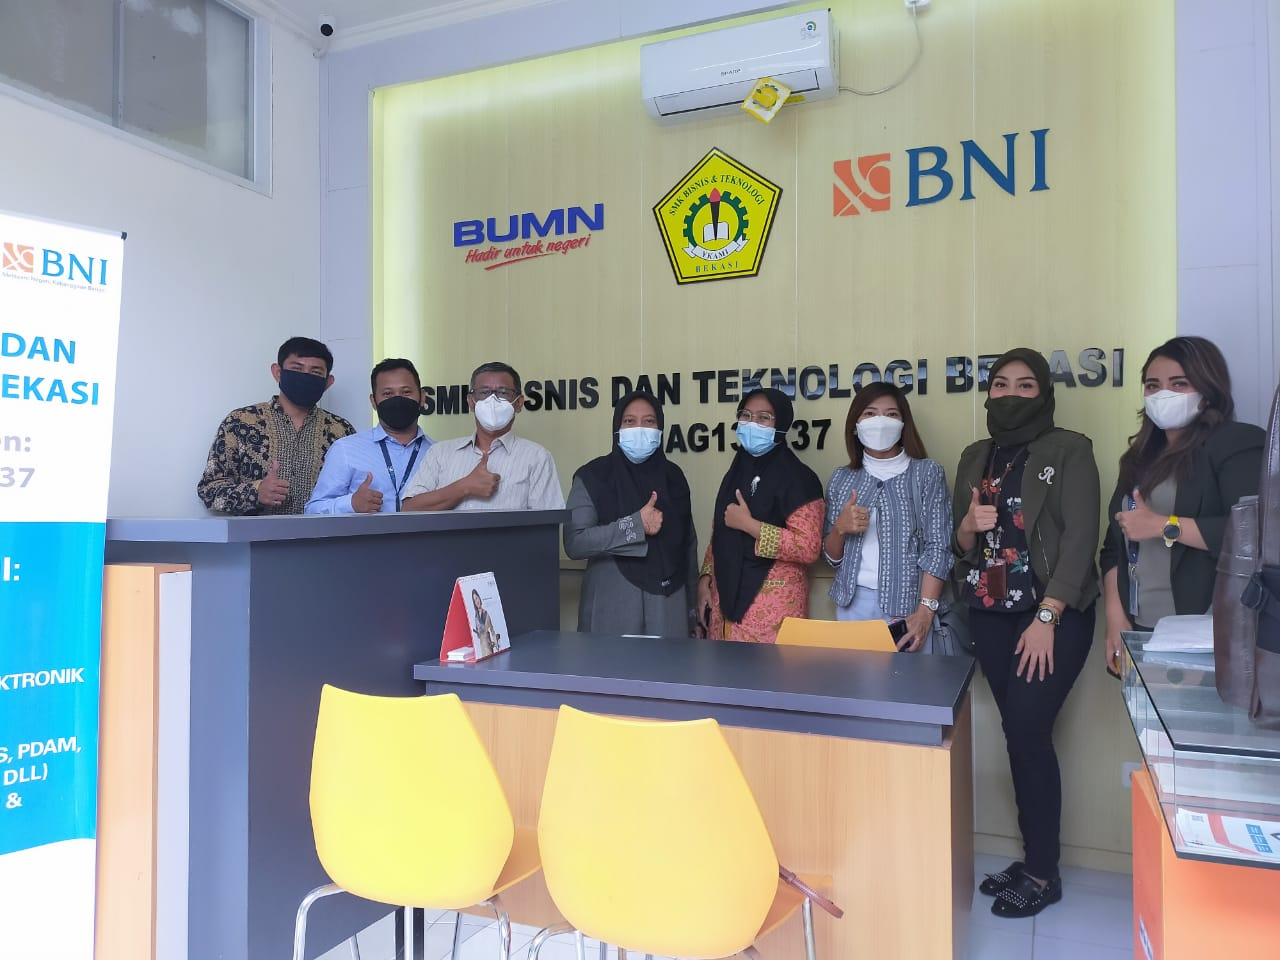 Kerjasama Bank BNI dengan SMK Bisnis dan Teknologi Bekasi